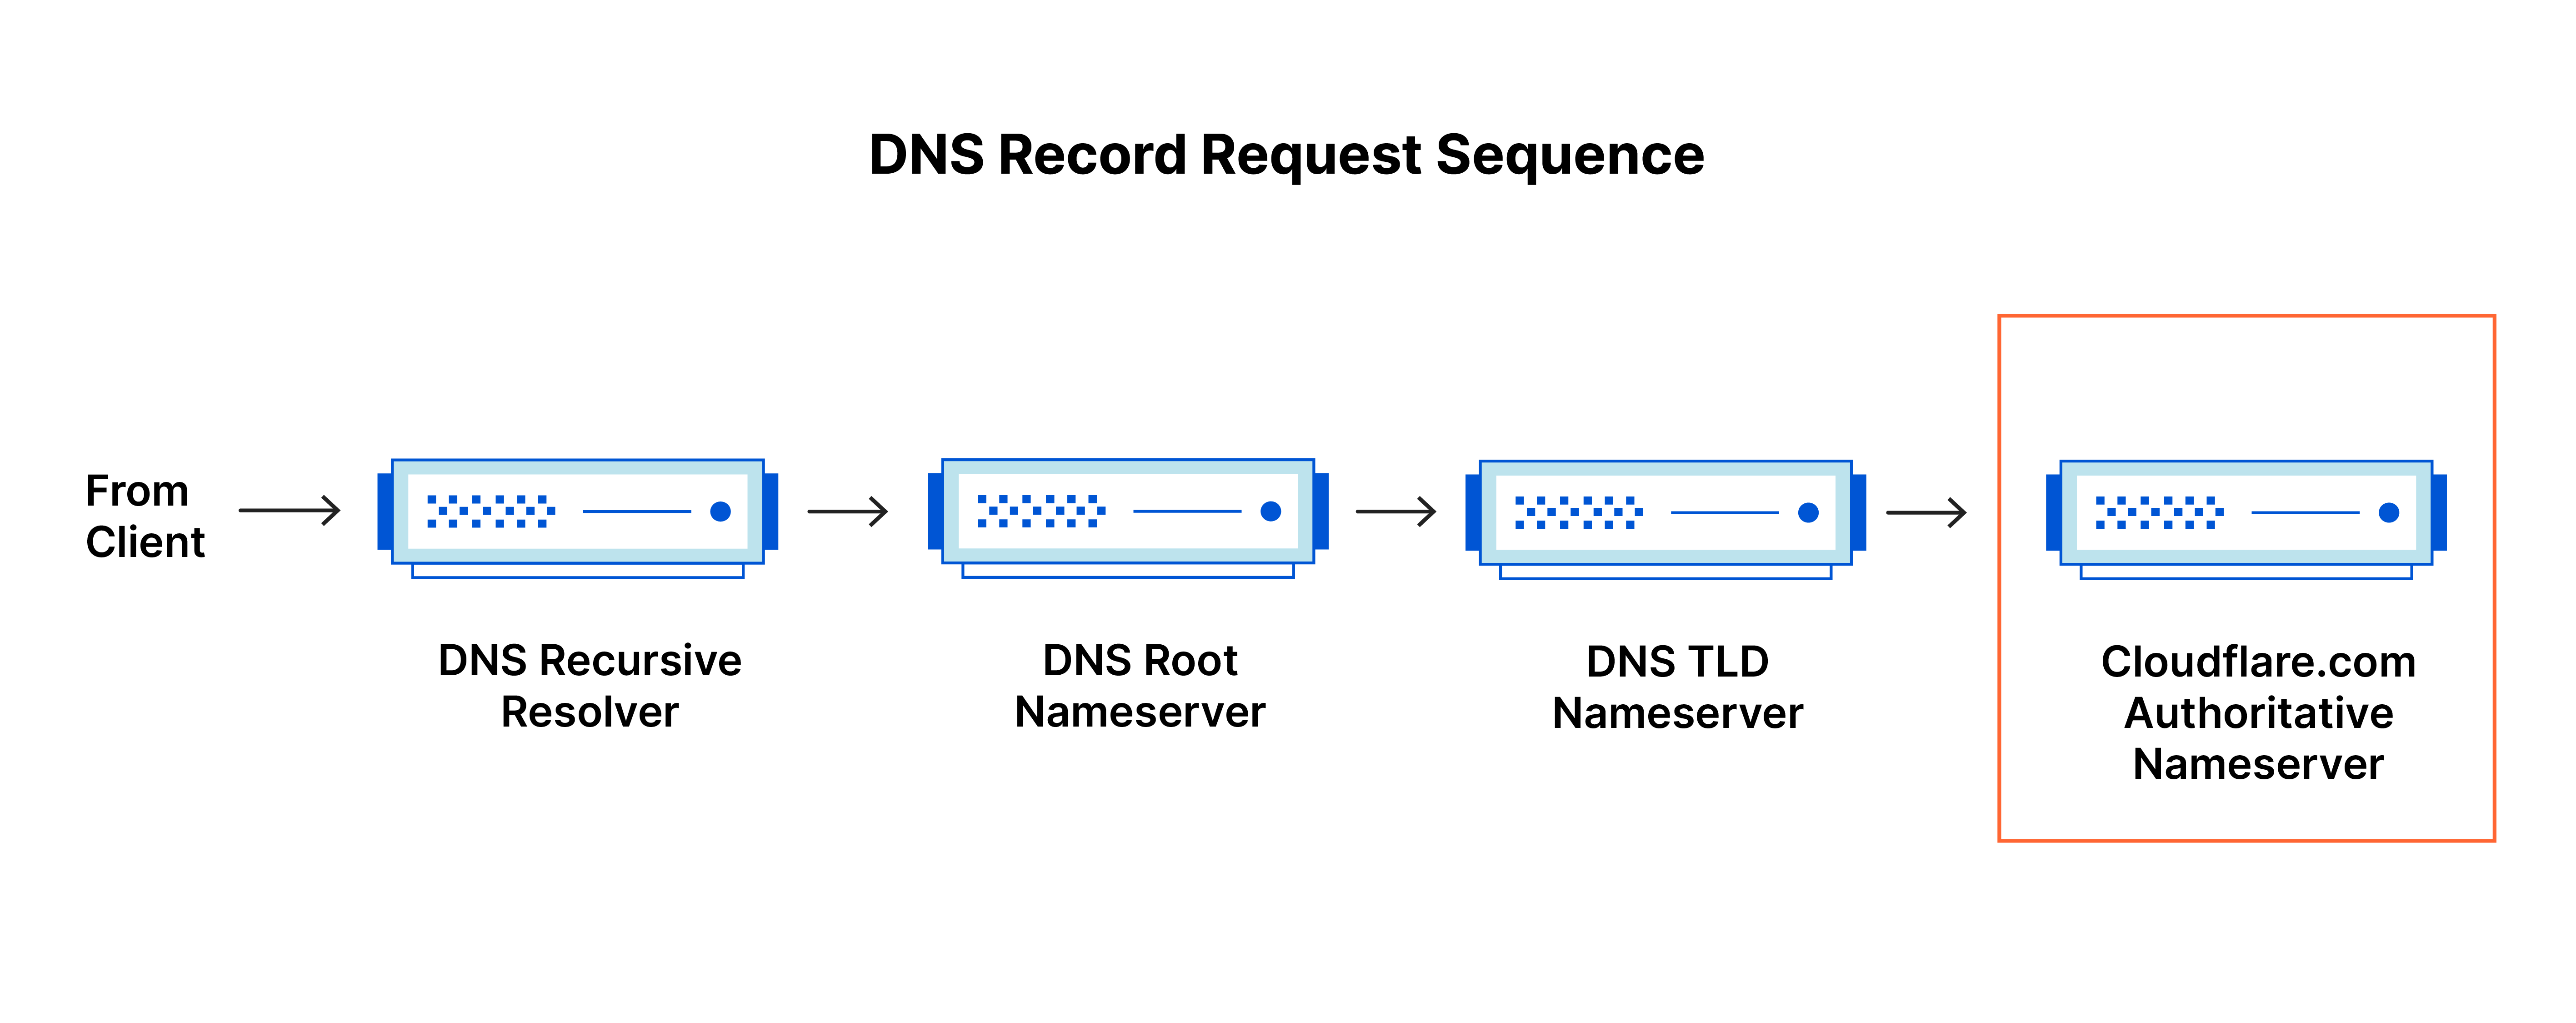 Séquence de demande d'enregistrement DNS - La requête DNS atteint le serveur de noms faisant autorité pour cloudflare.com